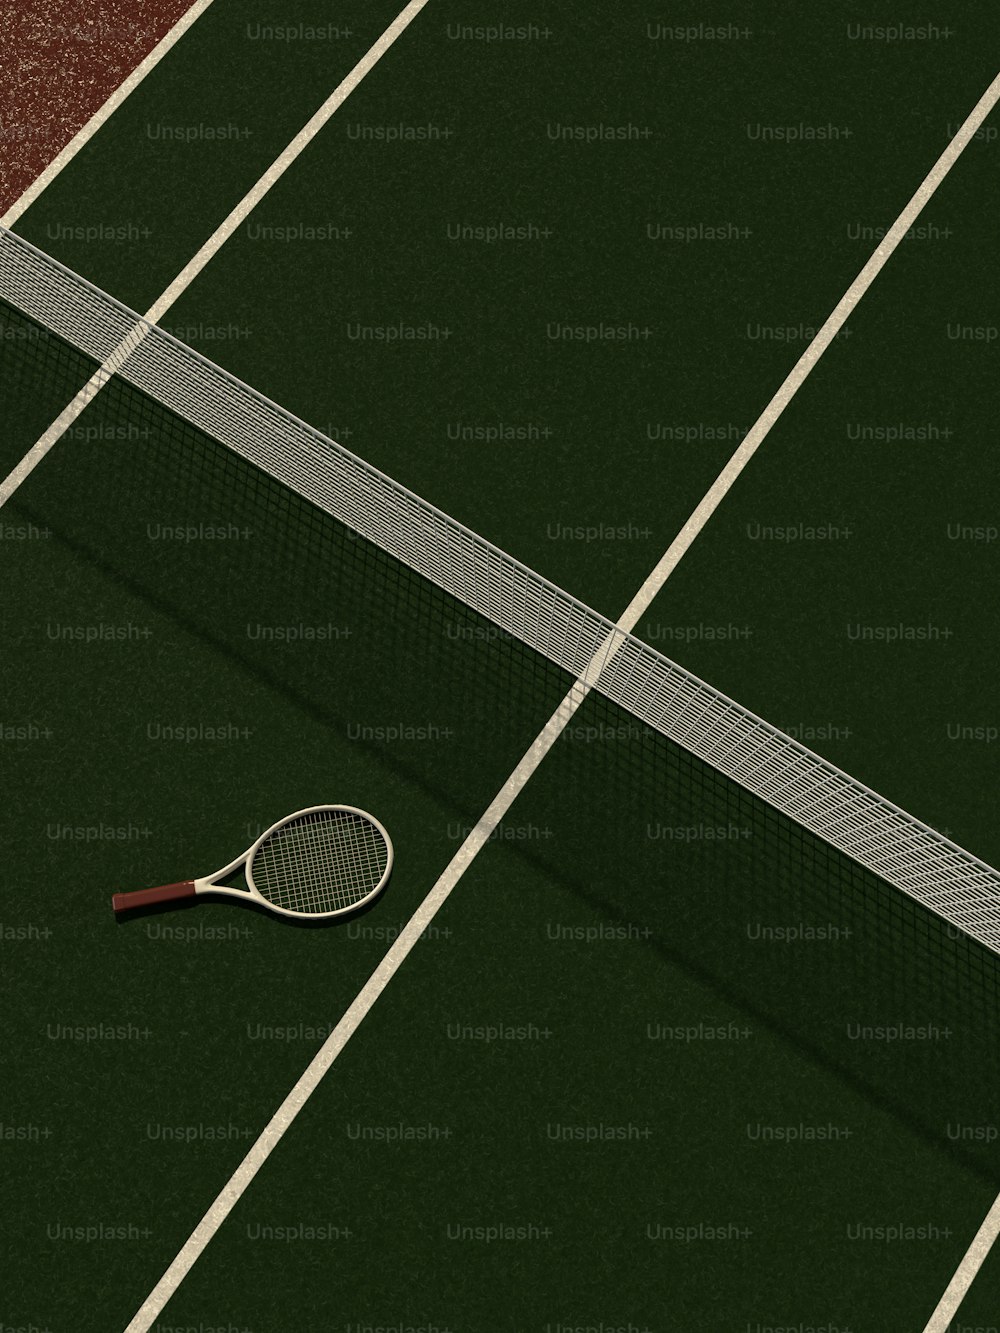 una raqueta de tenis y una pelota en una cancha de tenis